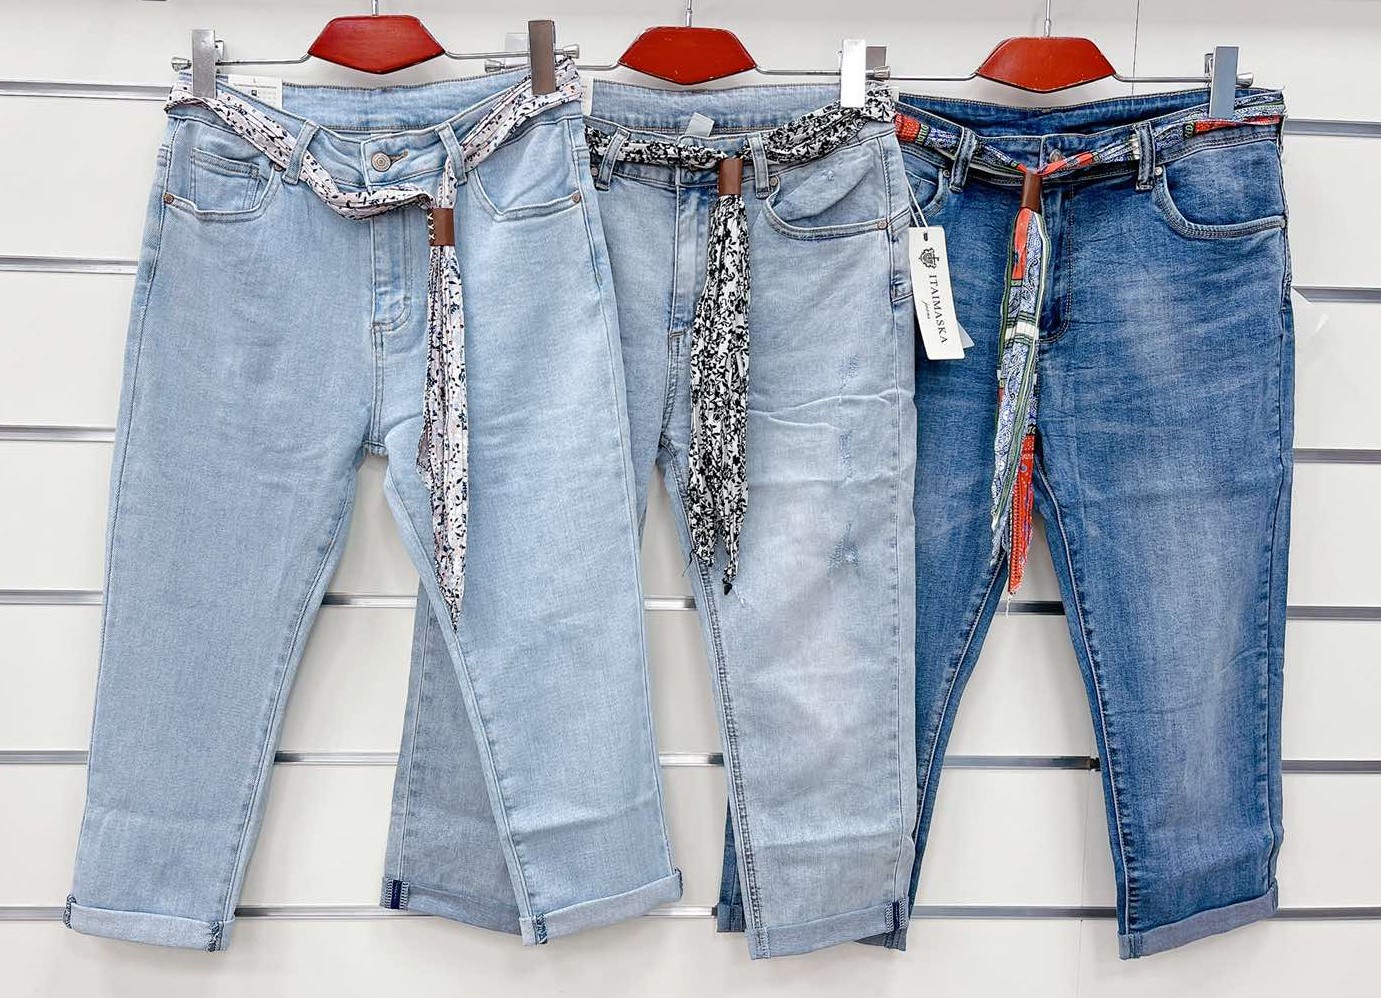 Spodnie damskie jeans Roz  38-48.  1 kolor . Paczka 10szt